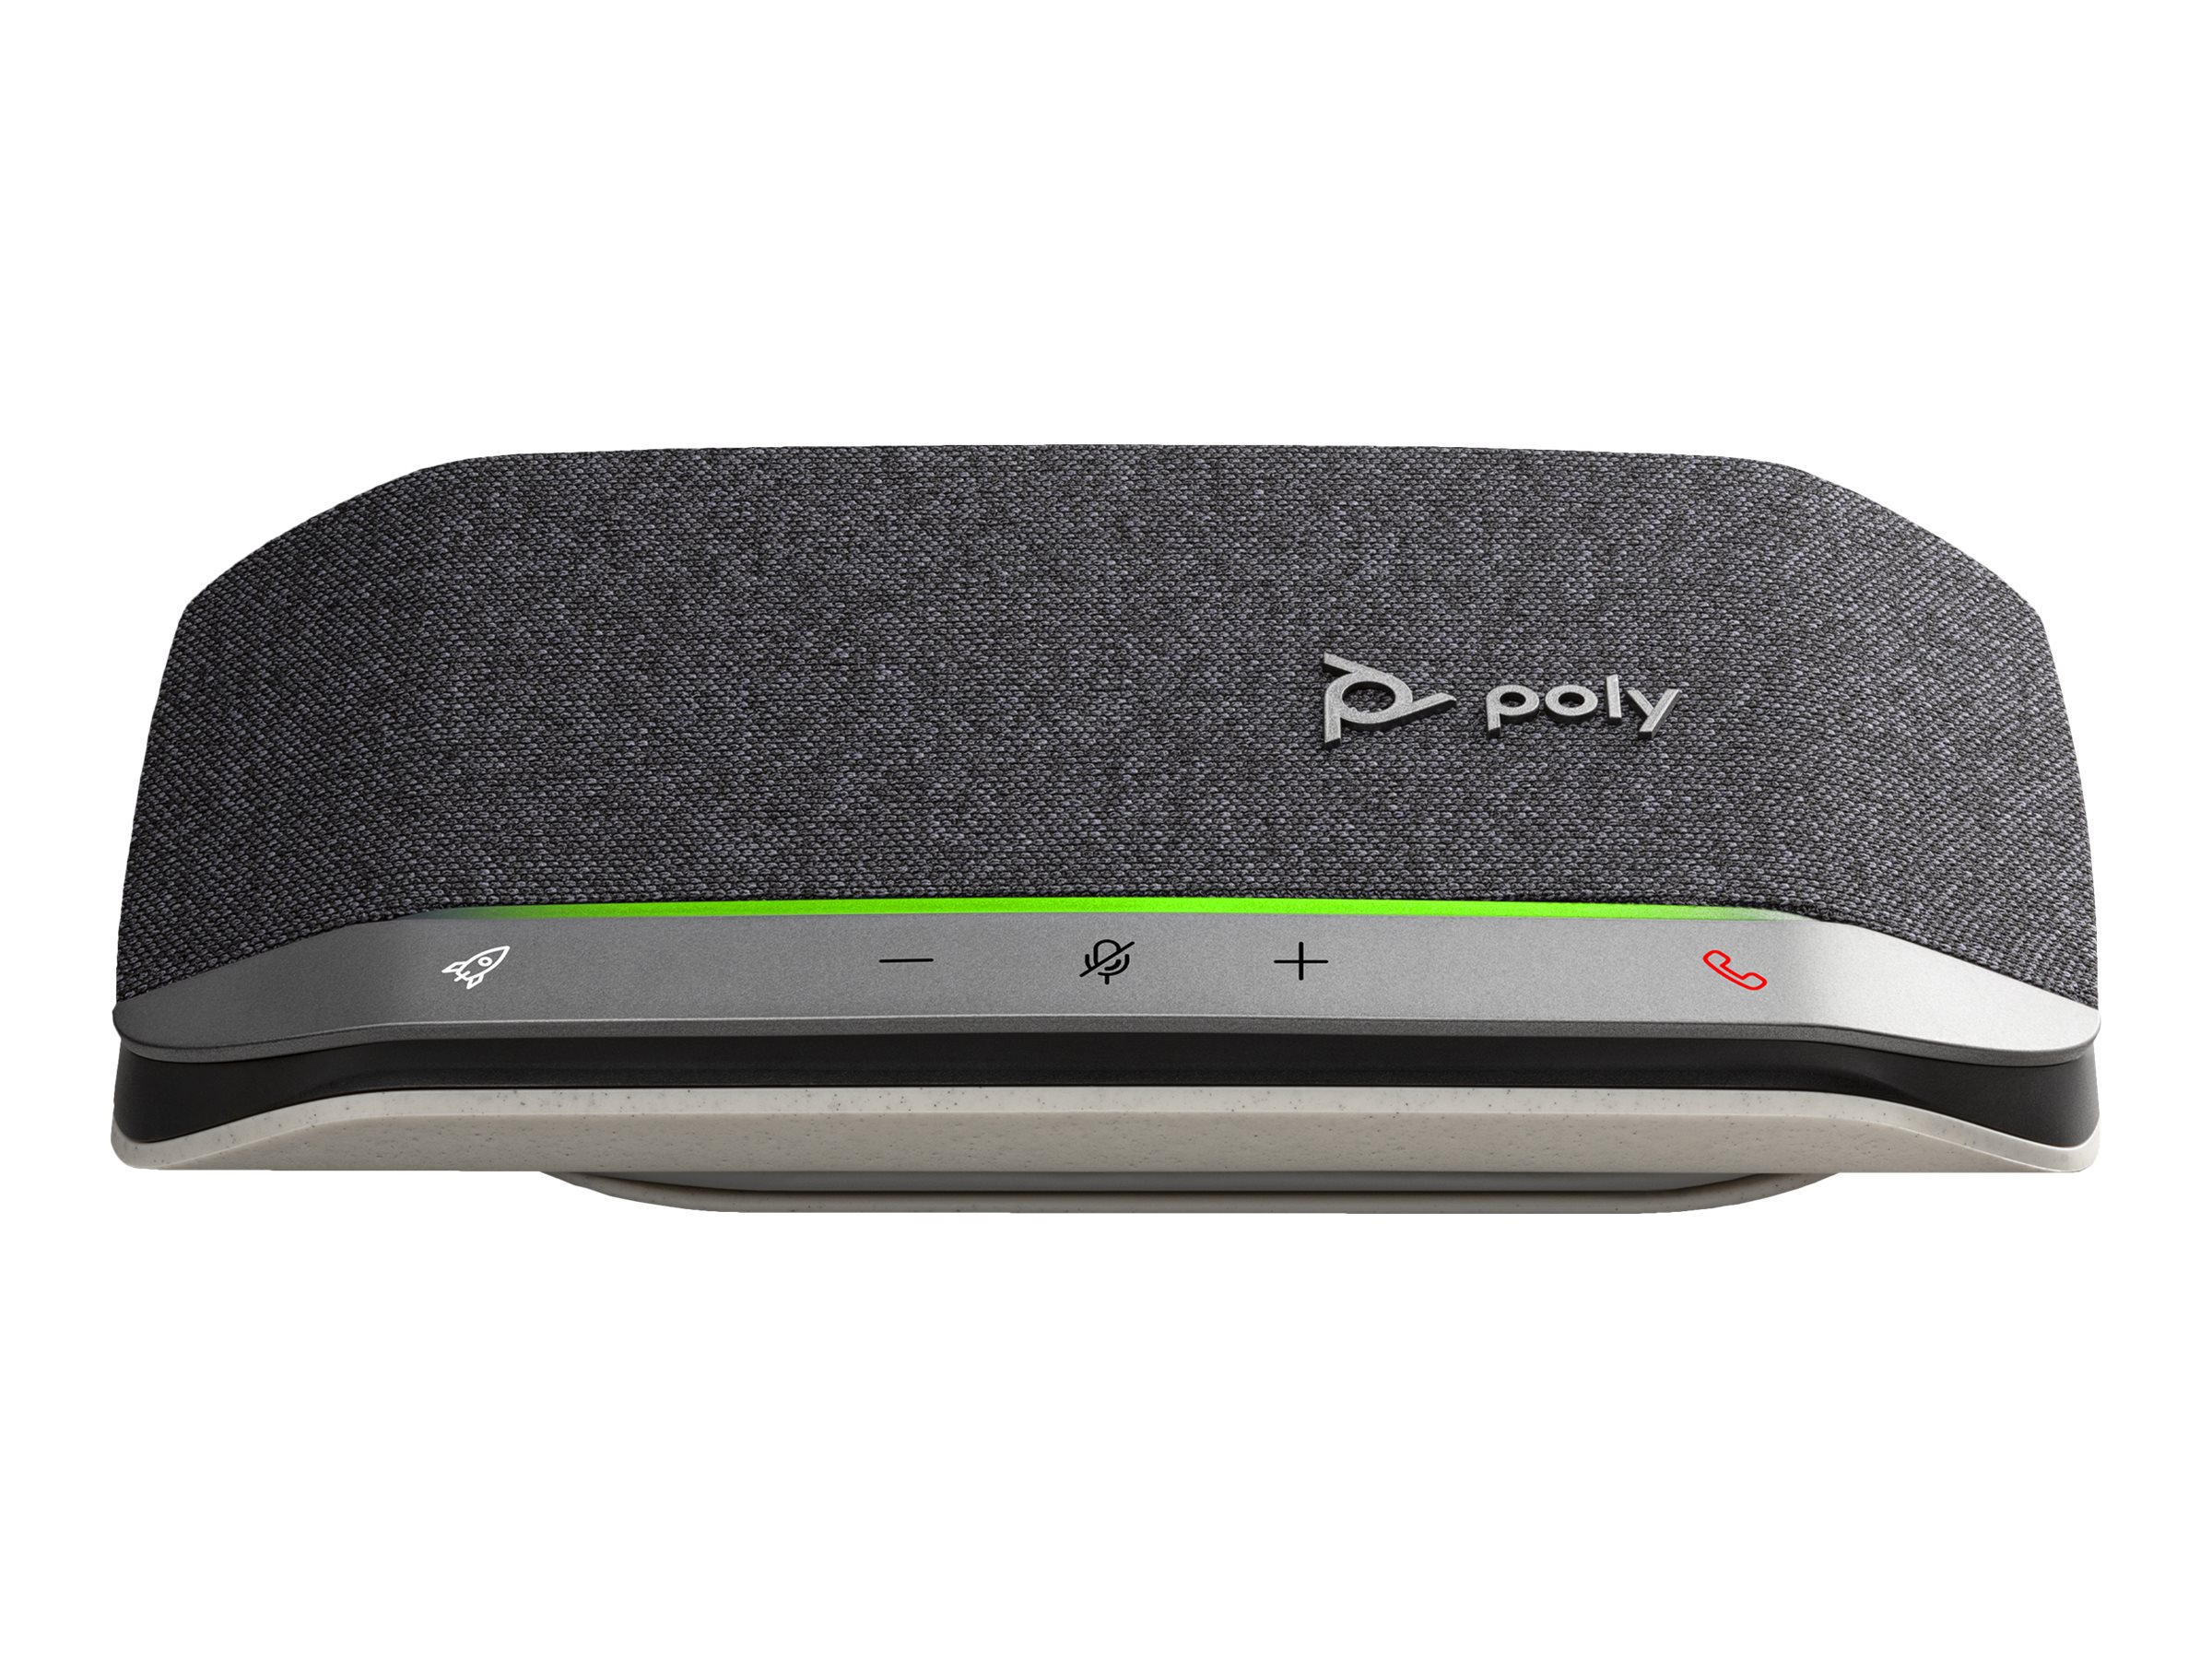 Poly Sync 20+ - Haut-parleur intelligent - Bluetooth - sans fil, filaire - USB-A - noir, argent - certifié Zoom, Certifié pour Microsoft Teams - 772C6AA - Speakerphones